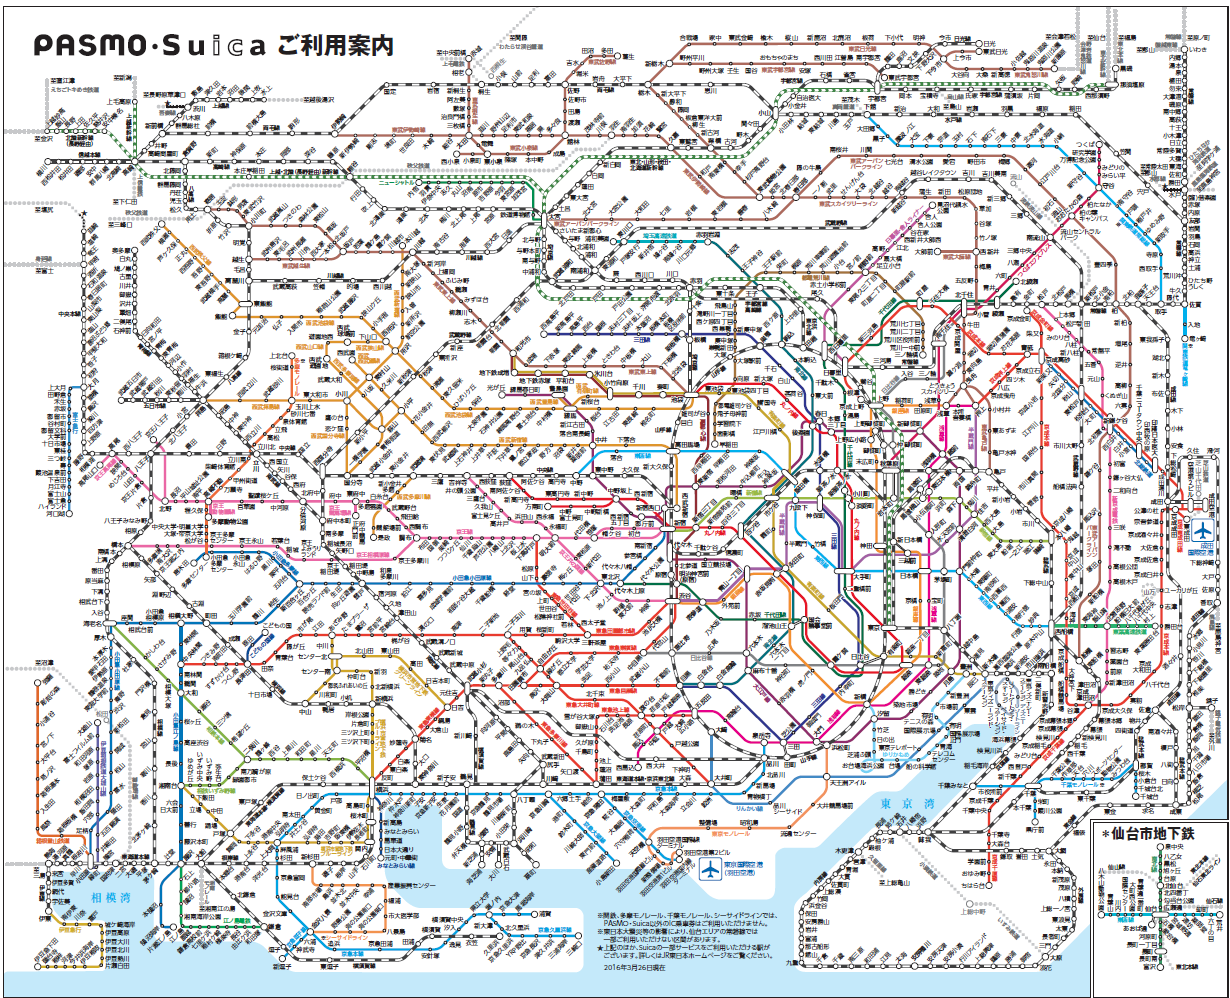 去东京自由行,应该购买网上的东京地铁3日券